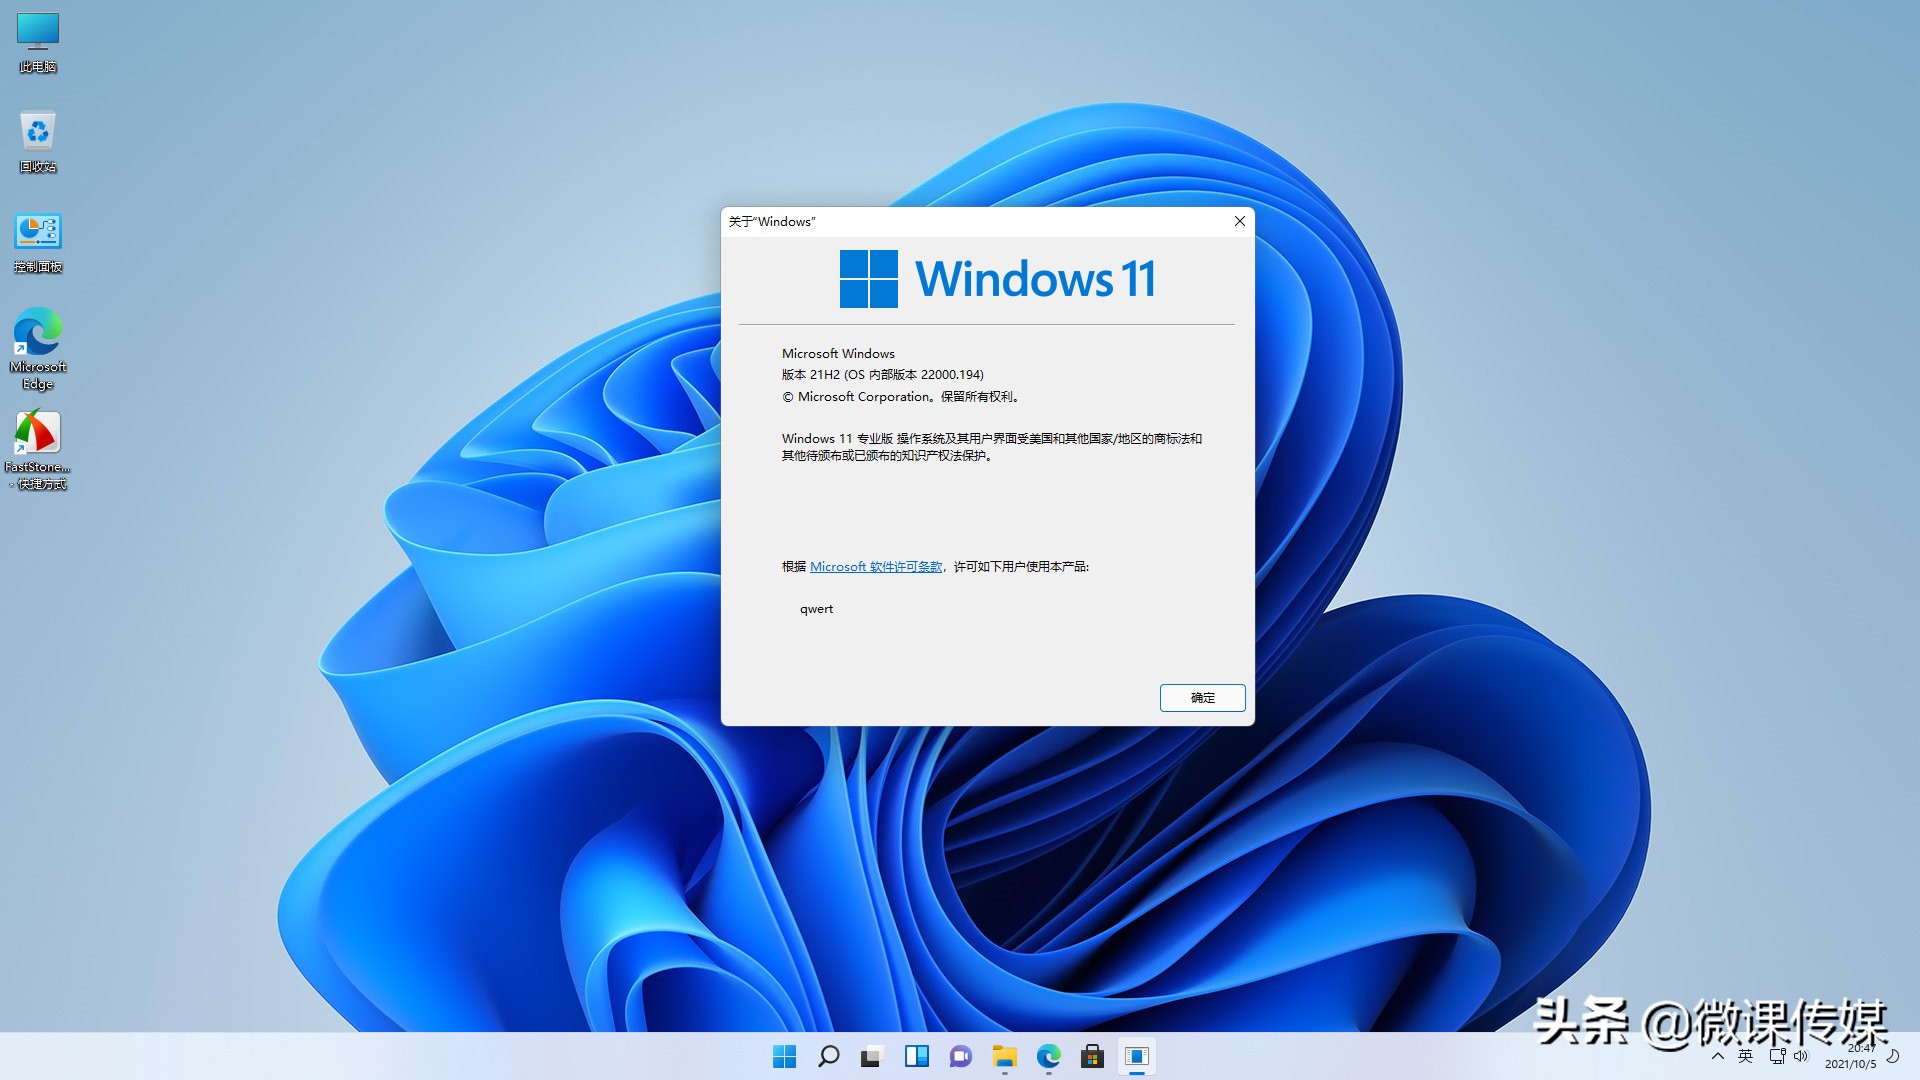 Windows 10显示“Windows 11不支持该处理器”，我还能安装吗？